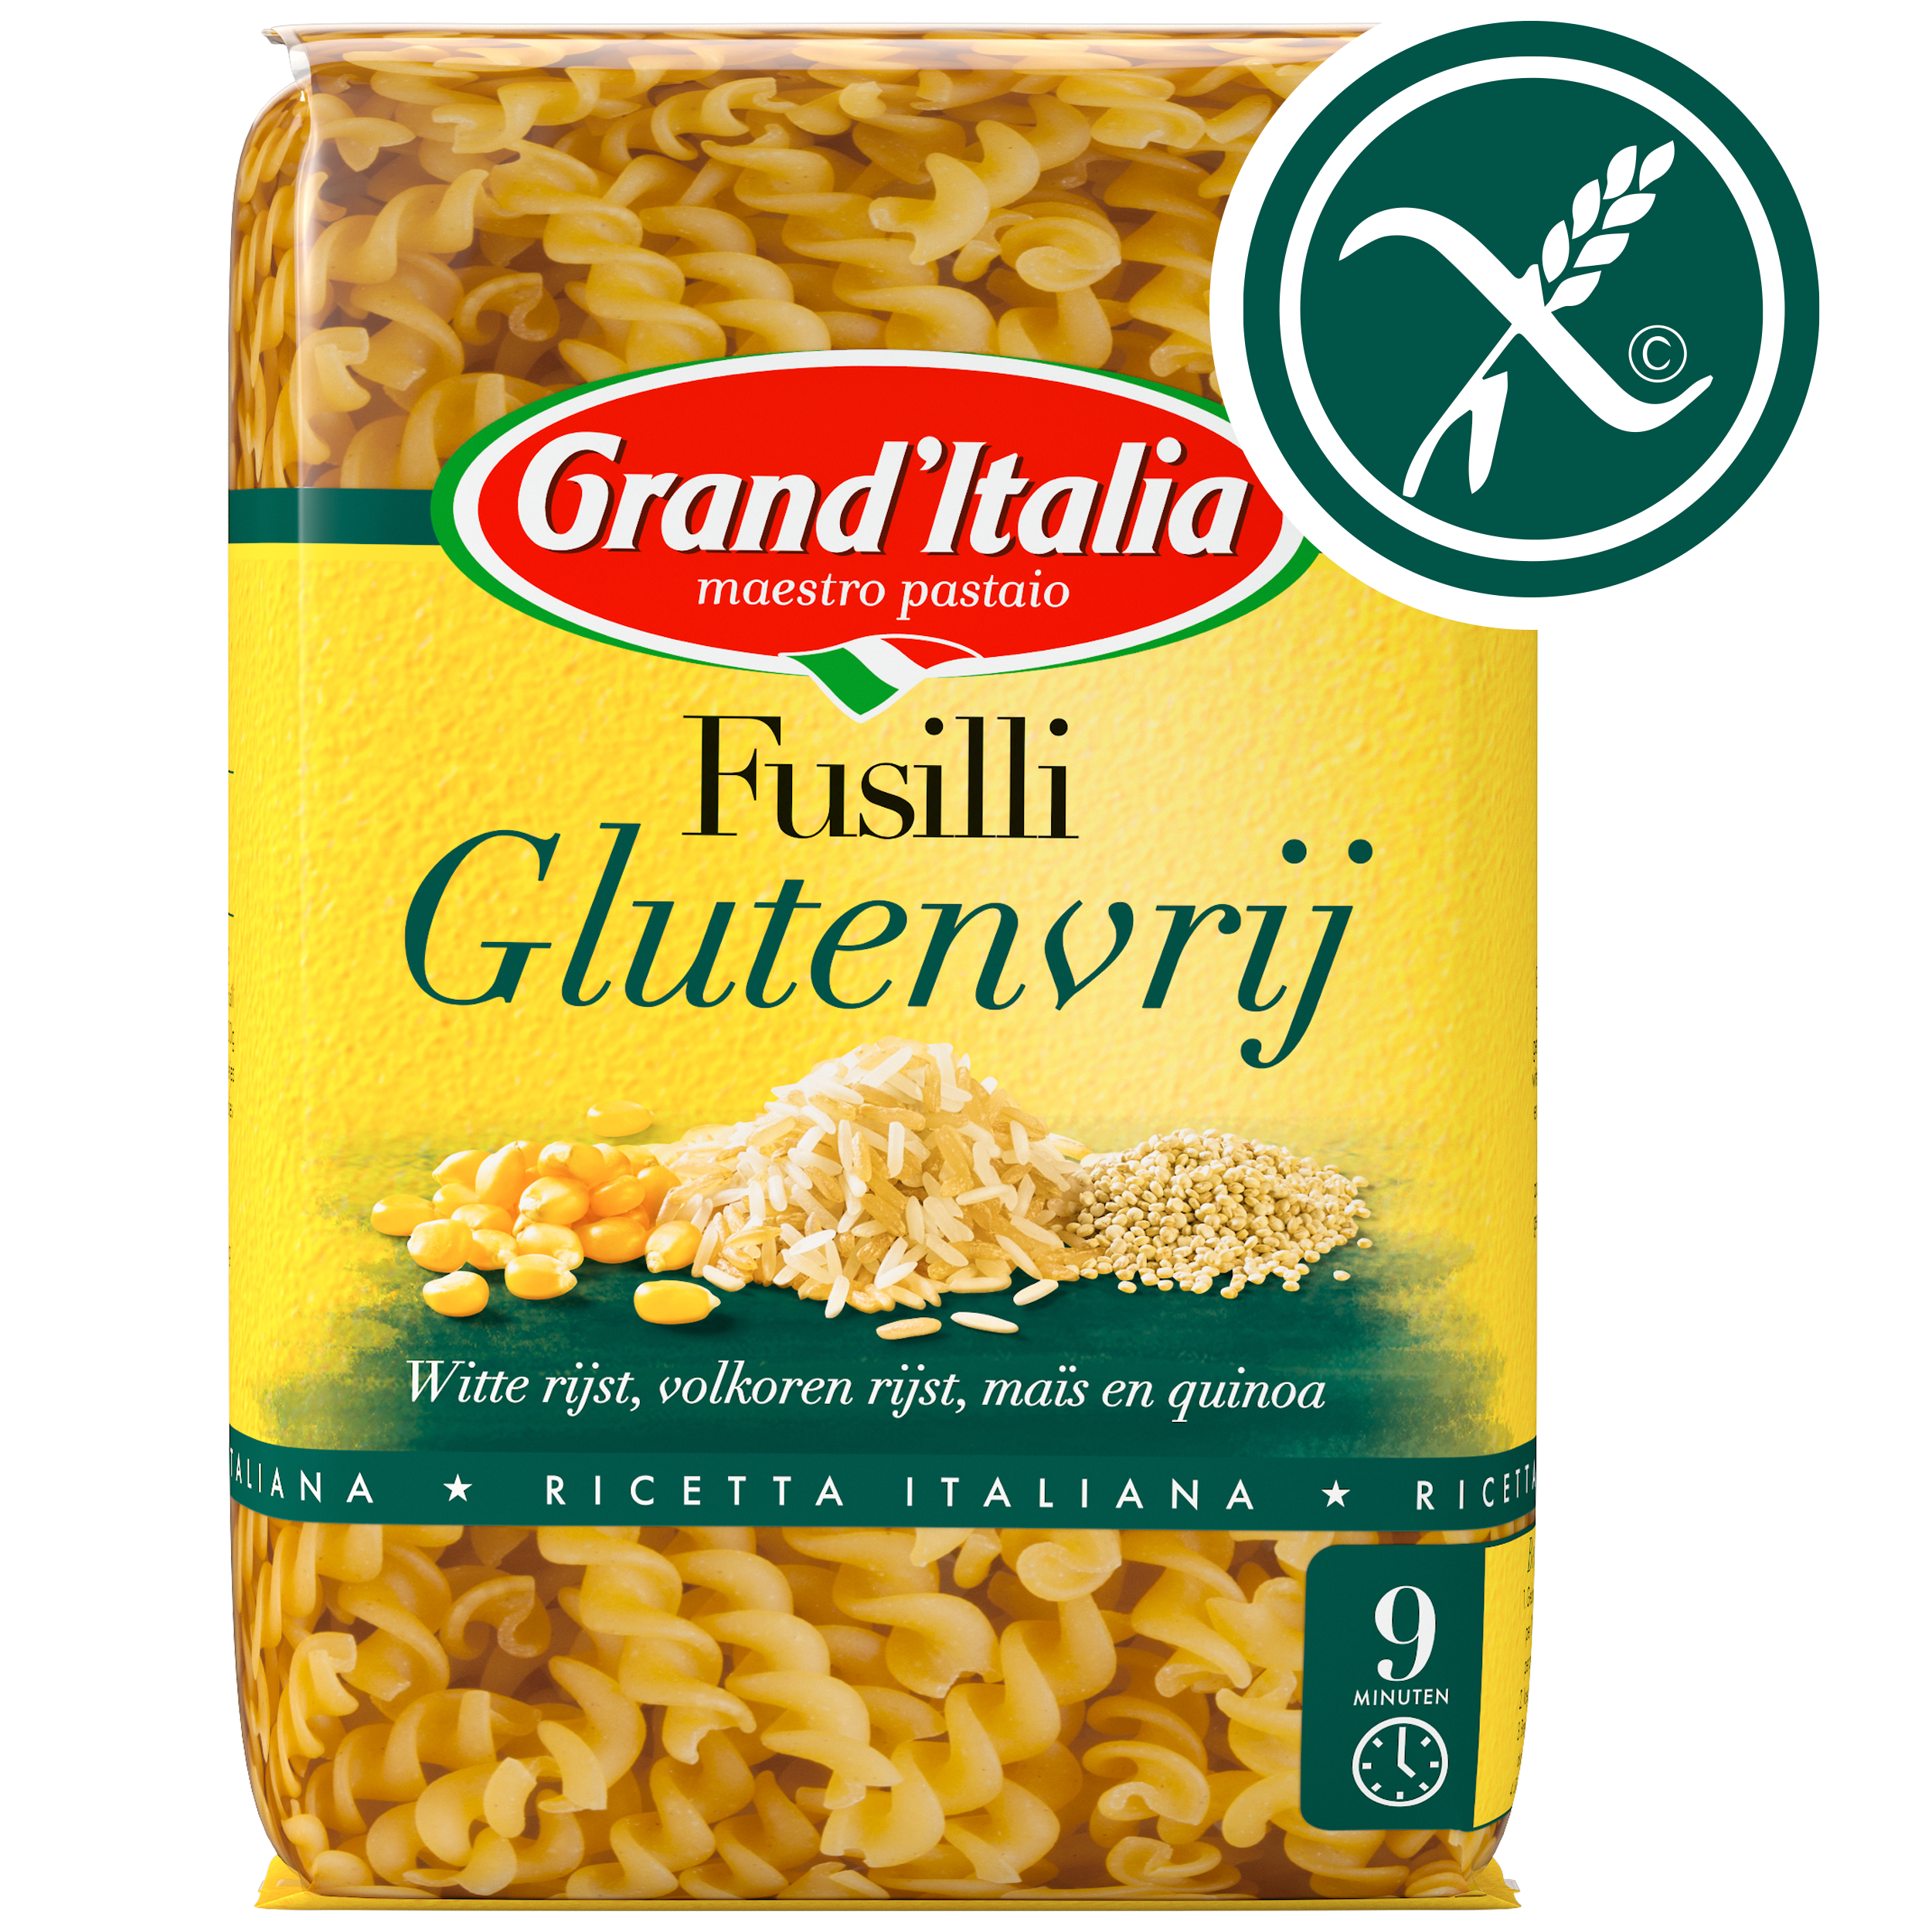 Pasta Fusilli Glutenvrij 400g claim Grand'Italia